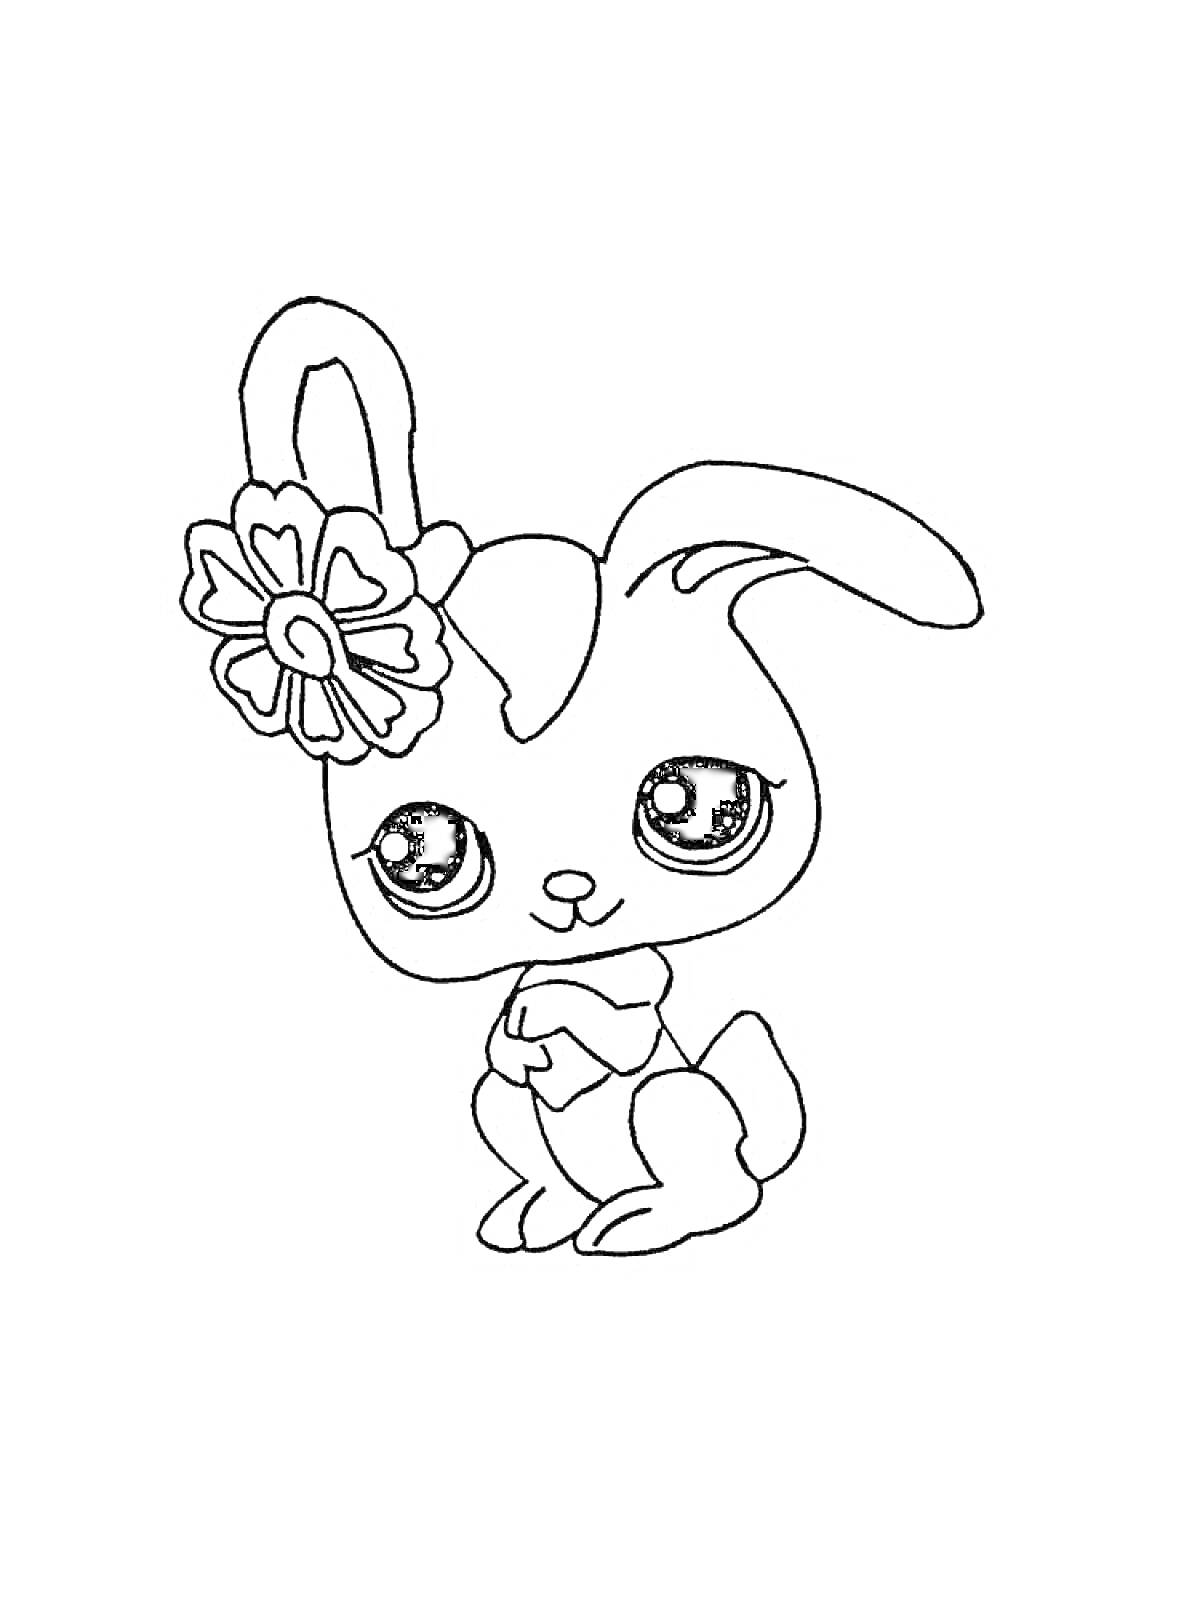 Раскраска Кролик с цветком на ухе из Маленького Зоомагазина